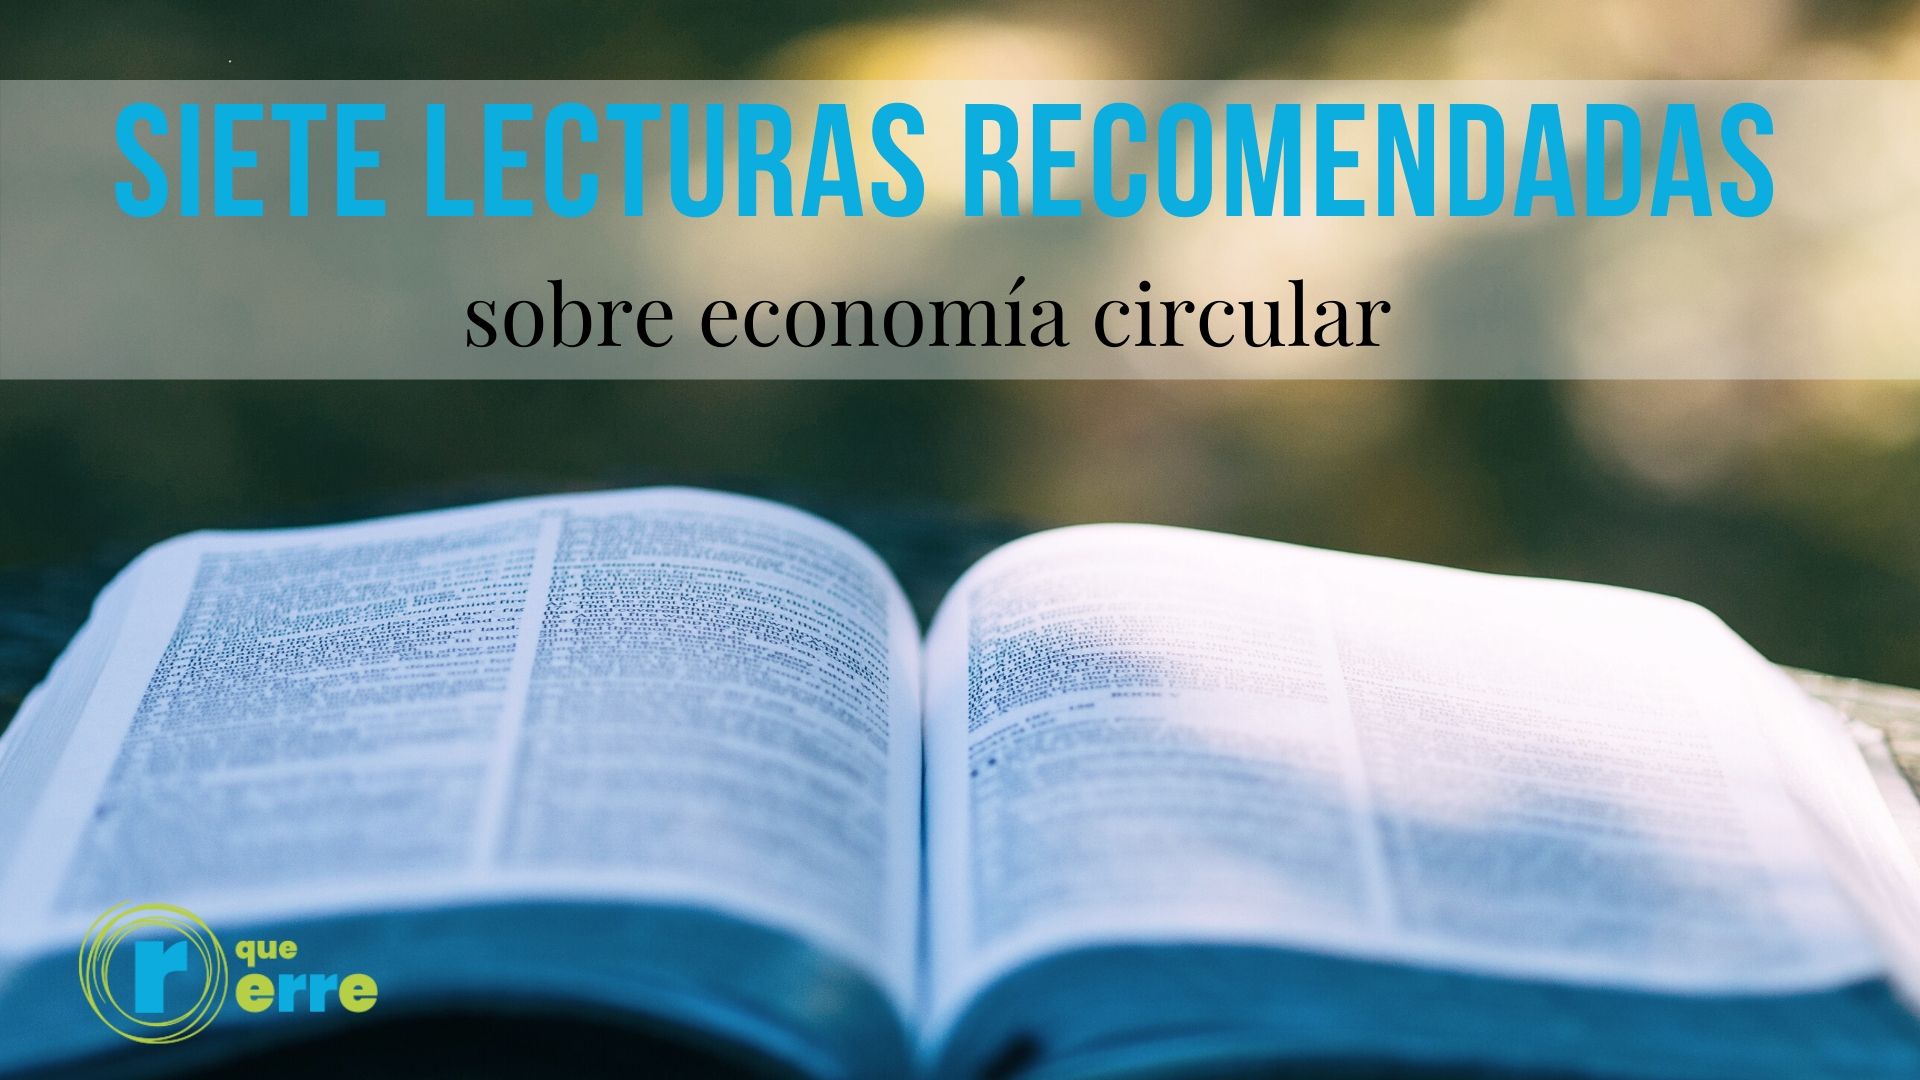 Siete lecturas sobre economía circular para el Día del Libro